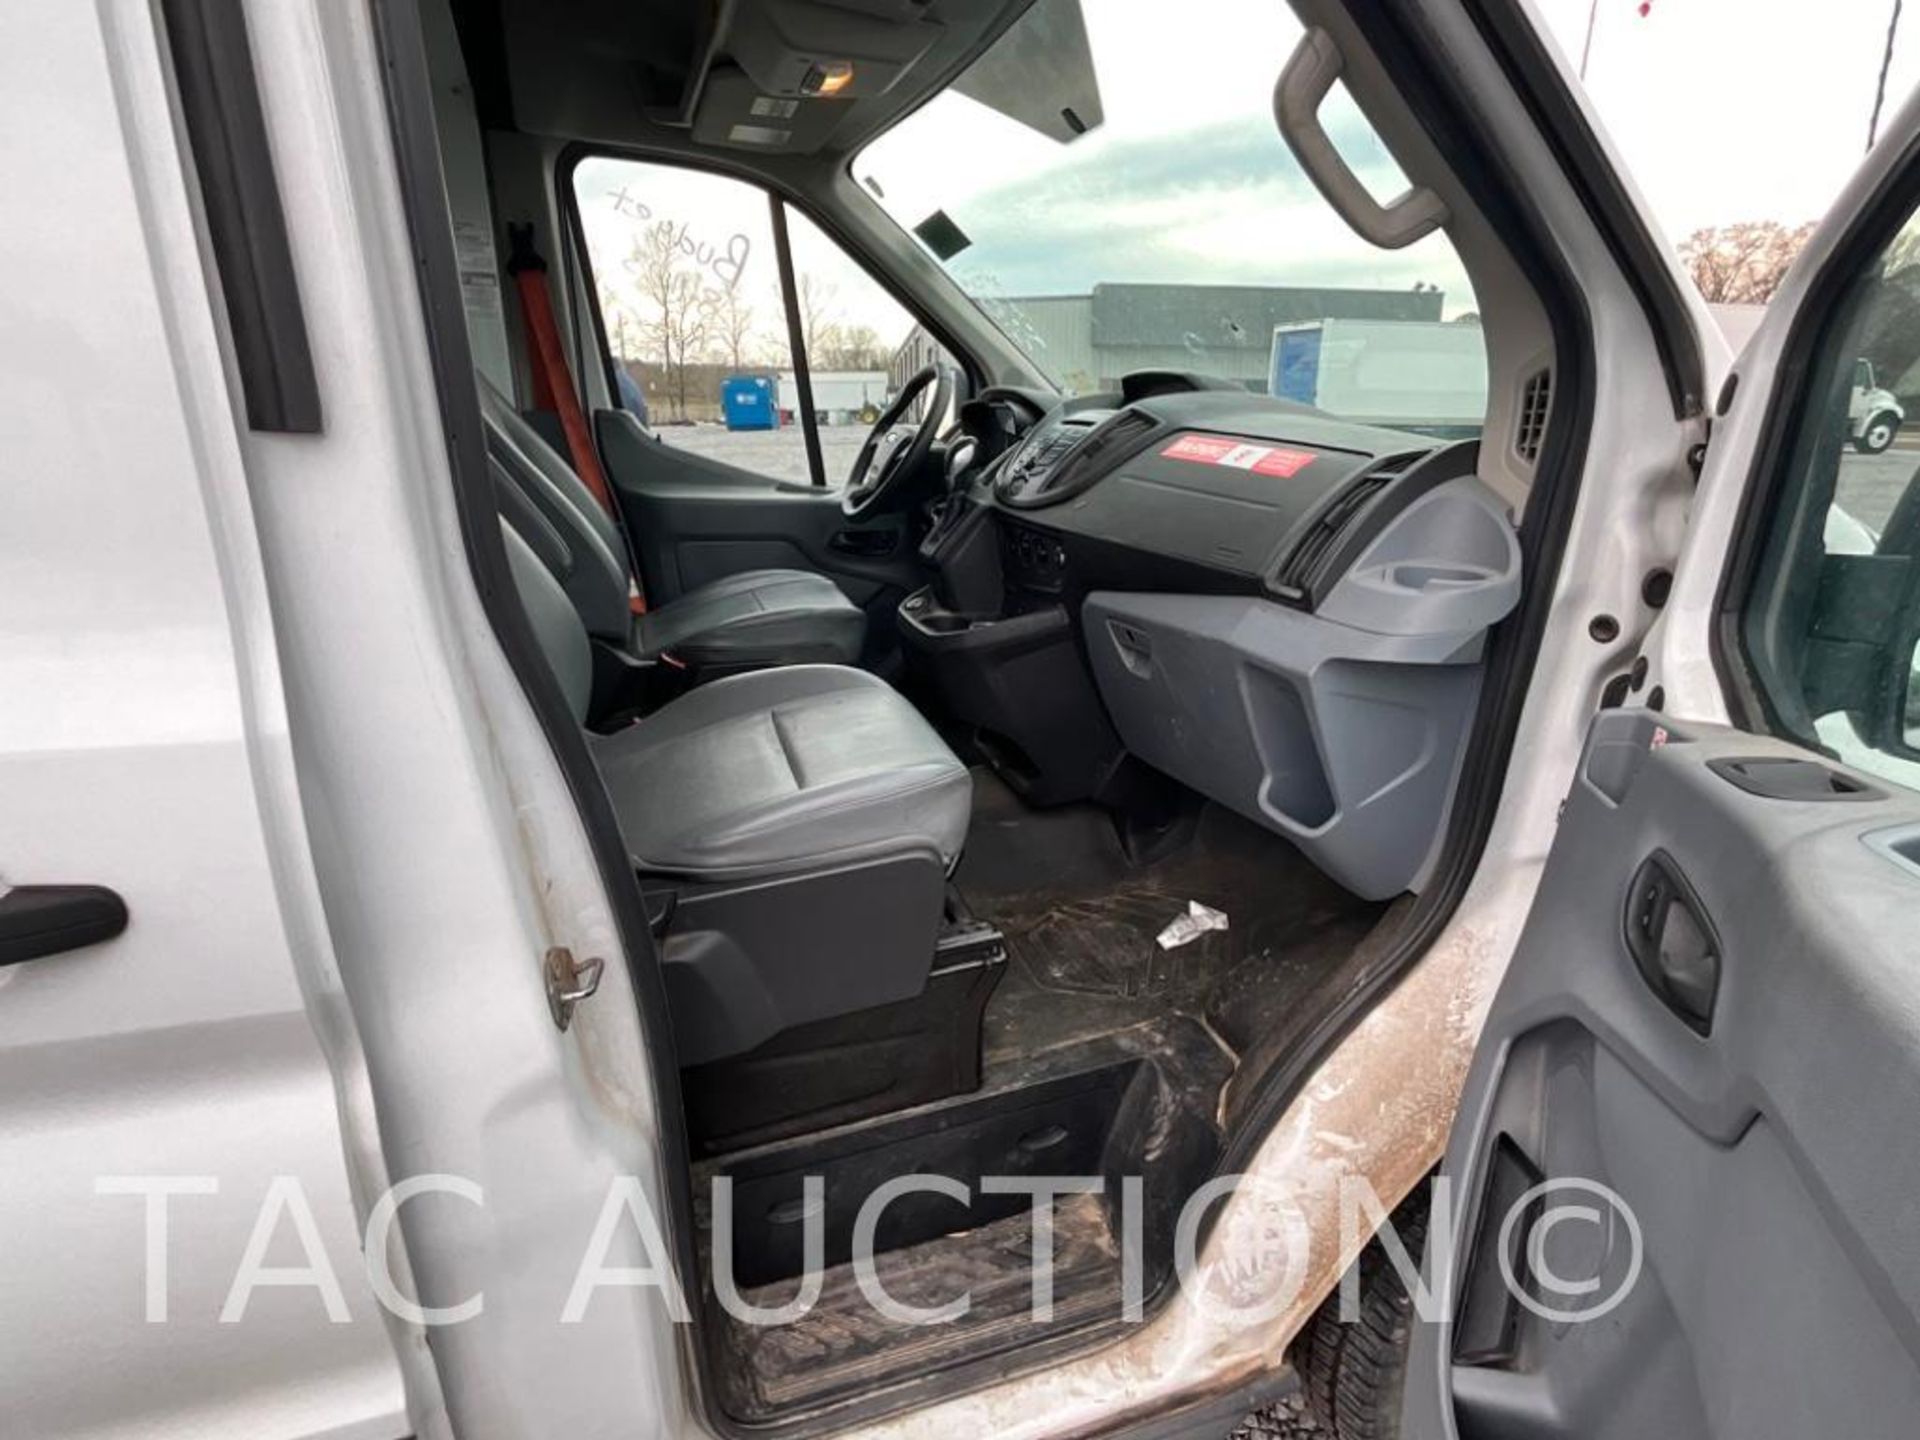 2019 Ford Transit 150 Cargo Van - Image 15 of 33